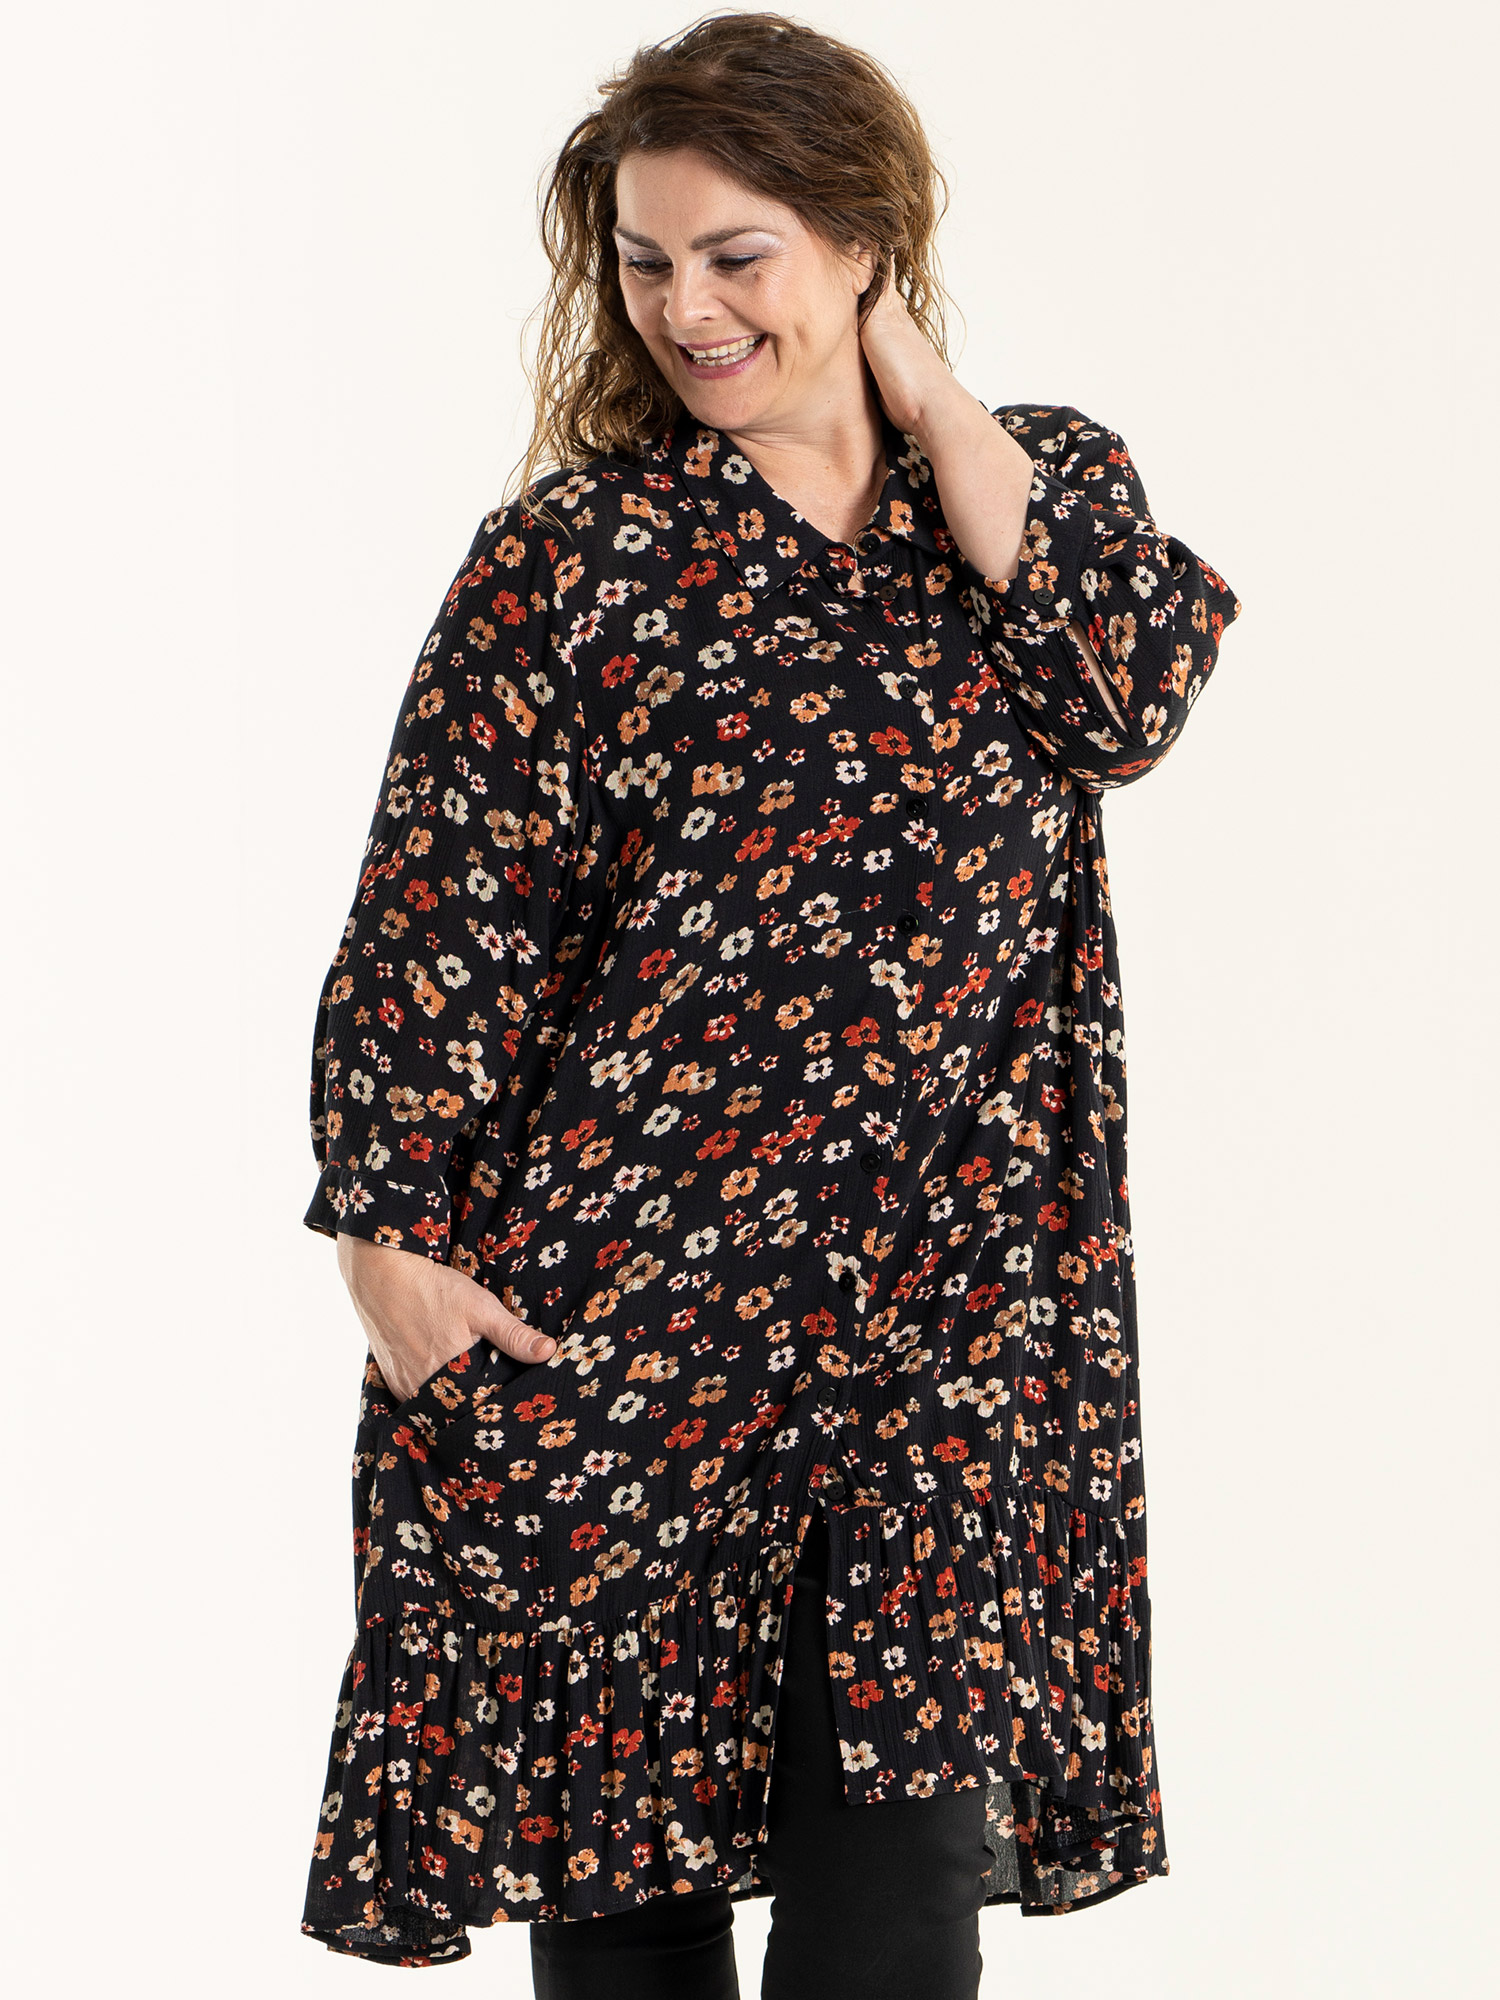 EDITH - Svart skjorte tunika i crepet viskose med blomster print fra Gozzip